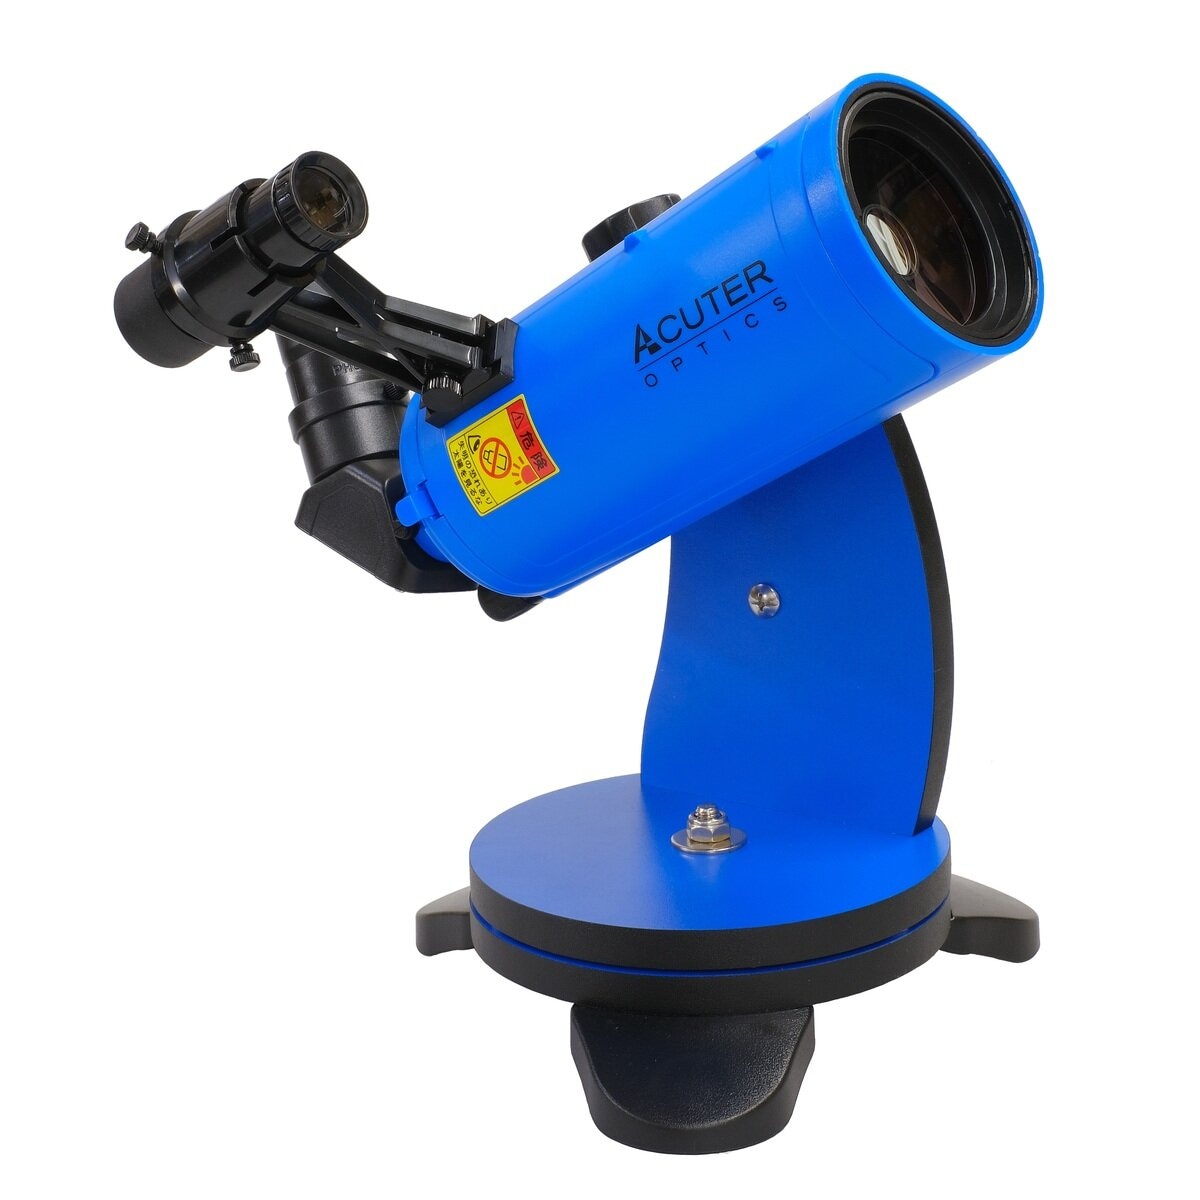 サイトロン MAKSY GO (マクシー・ゴー）60 ポータブル天体望遠鏡キット ブルー